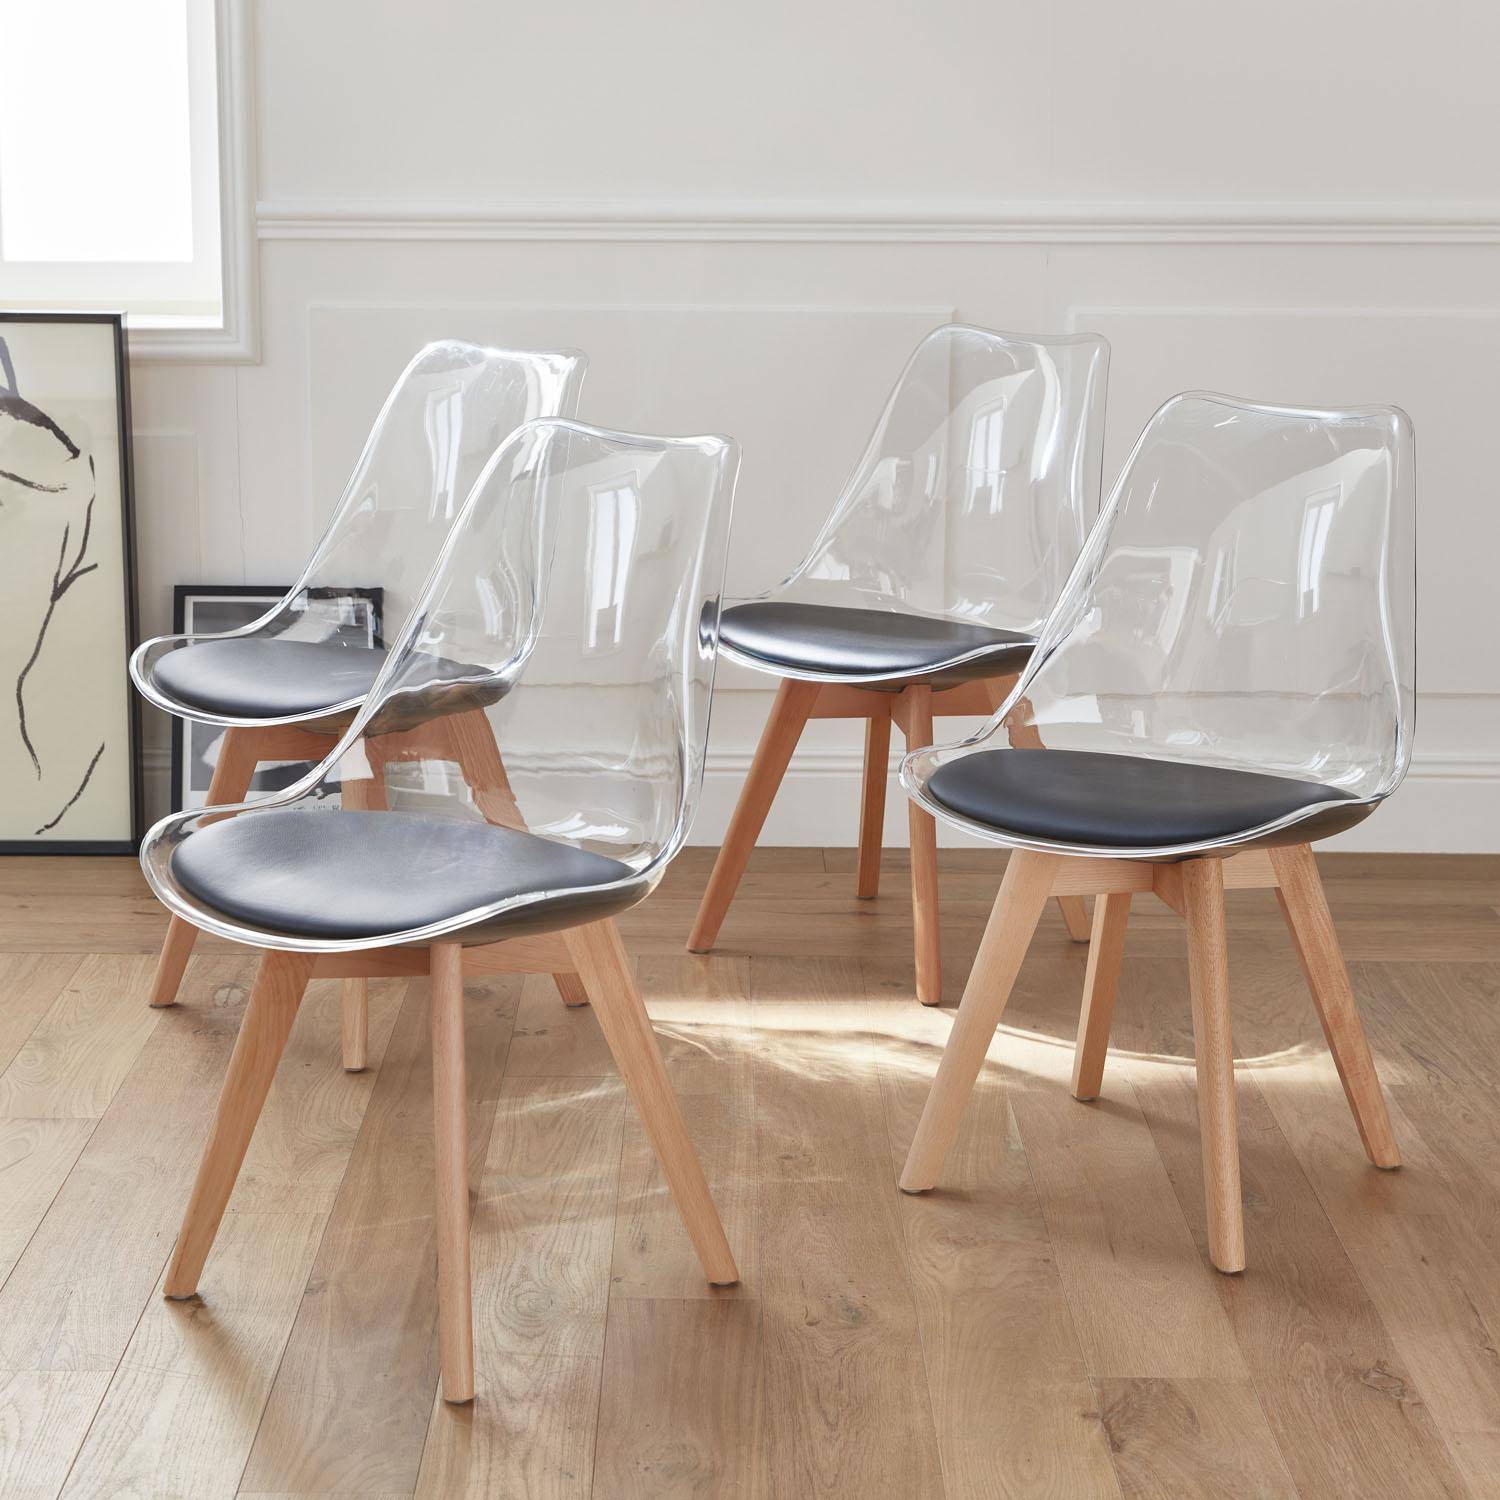 Lot de 4 chaises scandinaves - Lagertha - pieds bois, fauteuils 1 place, coussin noir, coque transparente ,sweeek,Photo1